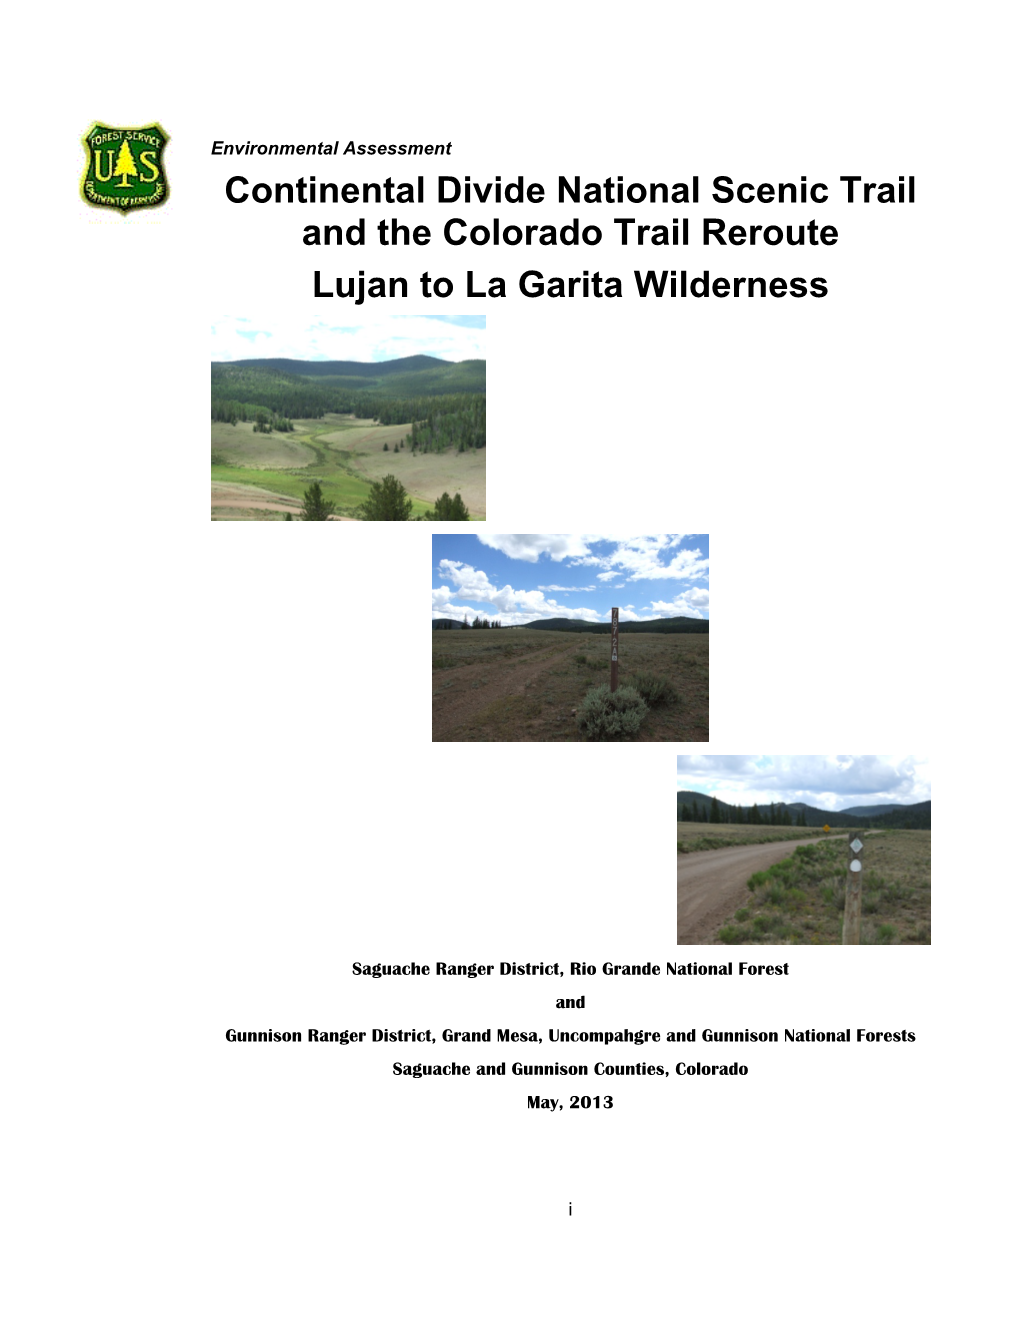 Continental Divide National Scenic Trail and the Colorado Trail Reroute Lujan to La Garita Wilderness